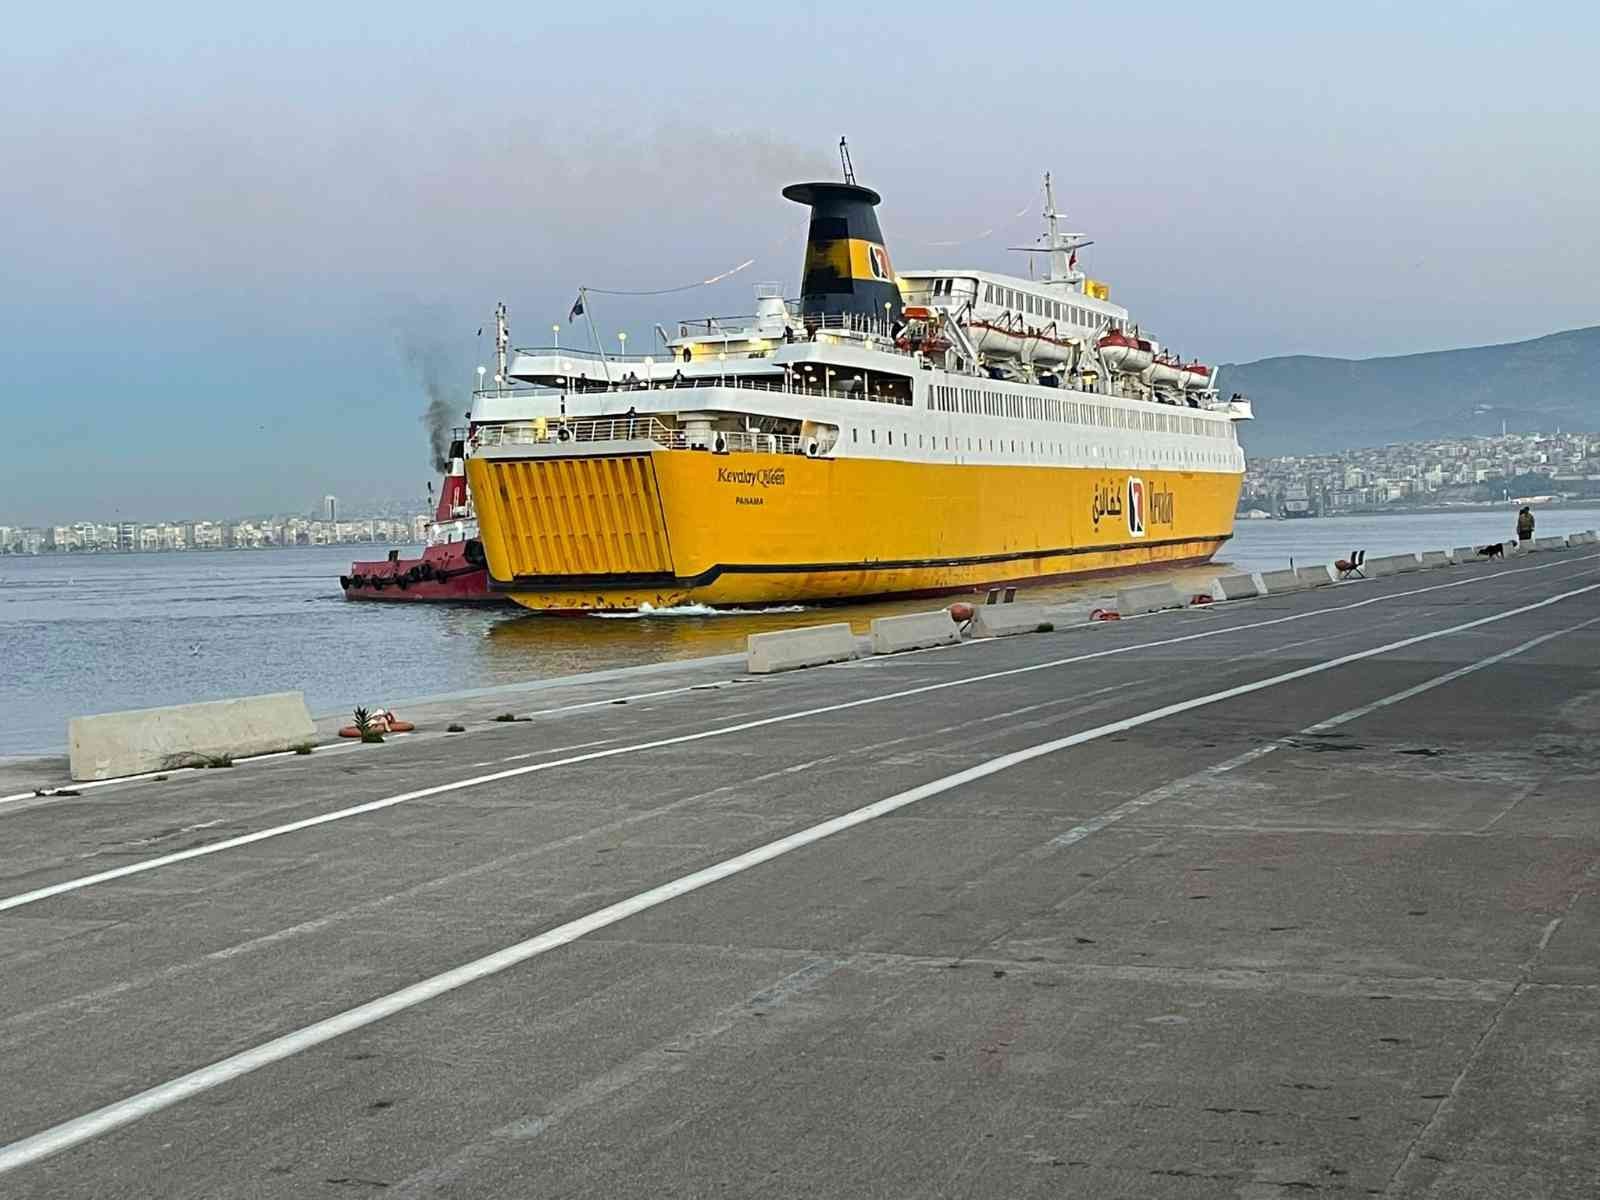 İzmir’e Libya’dan ikinci yolcu gemisi geldi #izmir